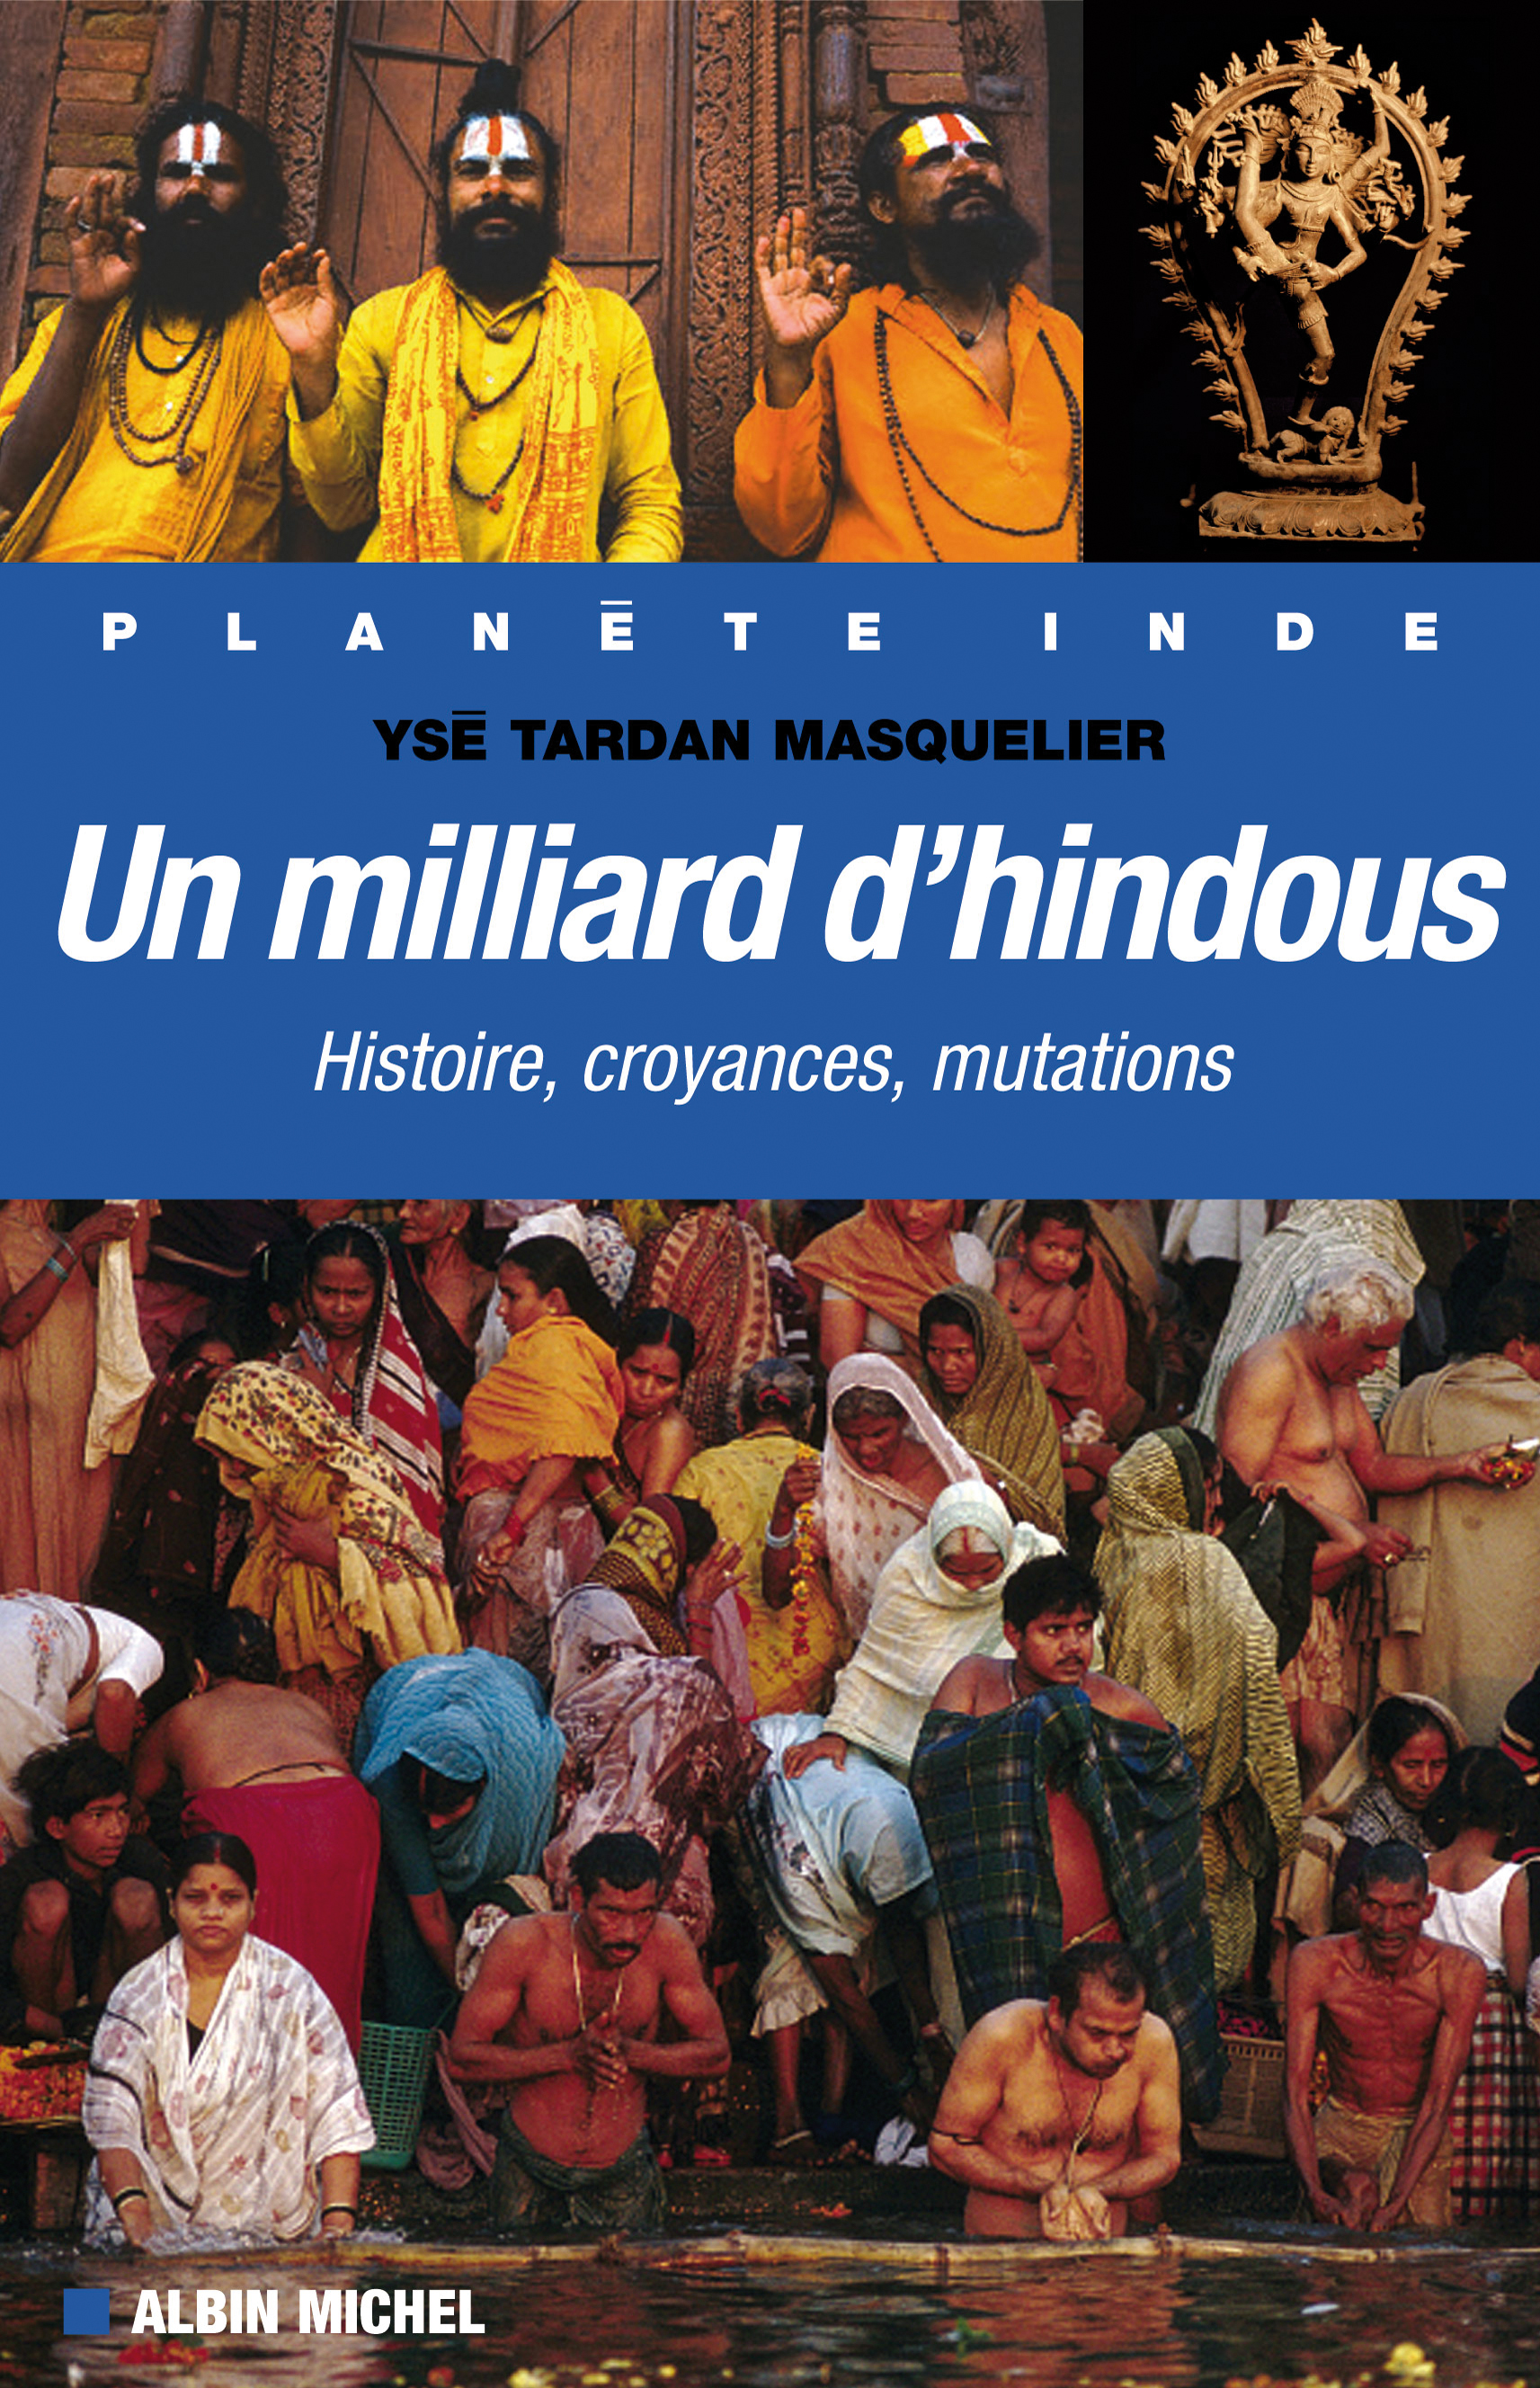 Couverture du livre Un milliard d'hindous